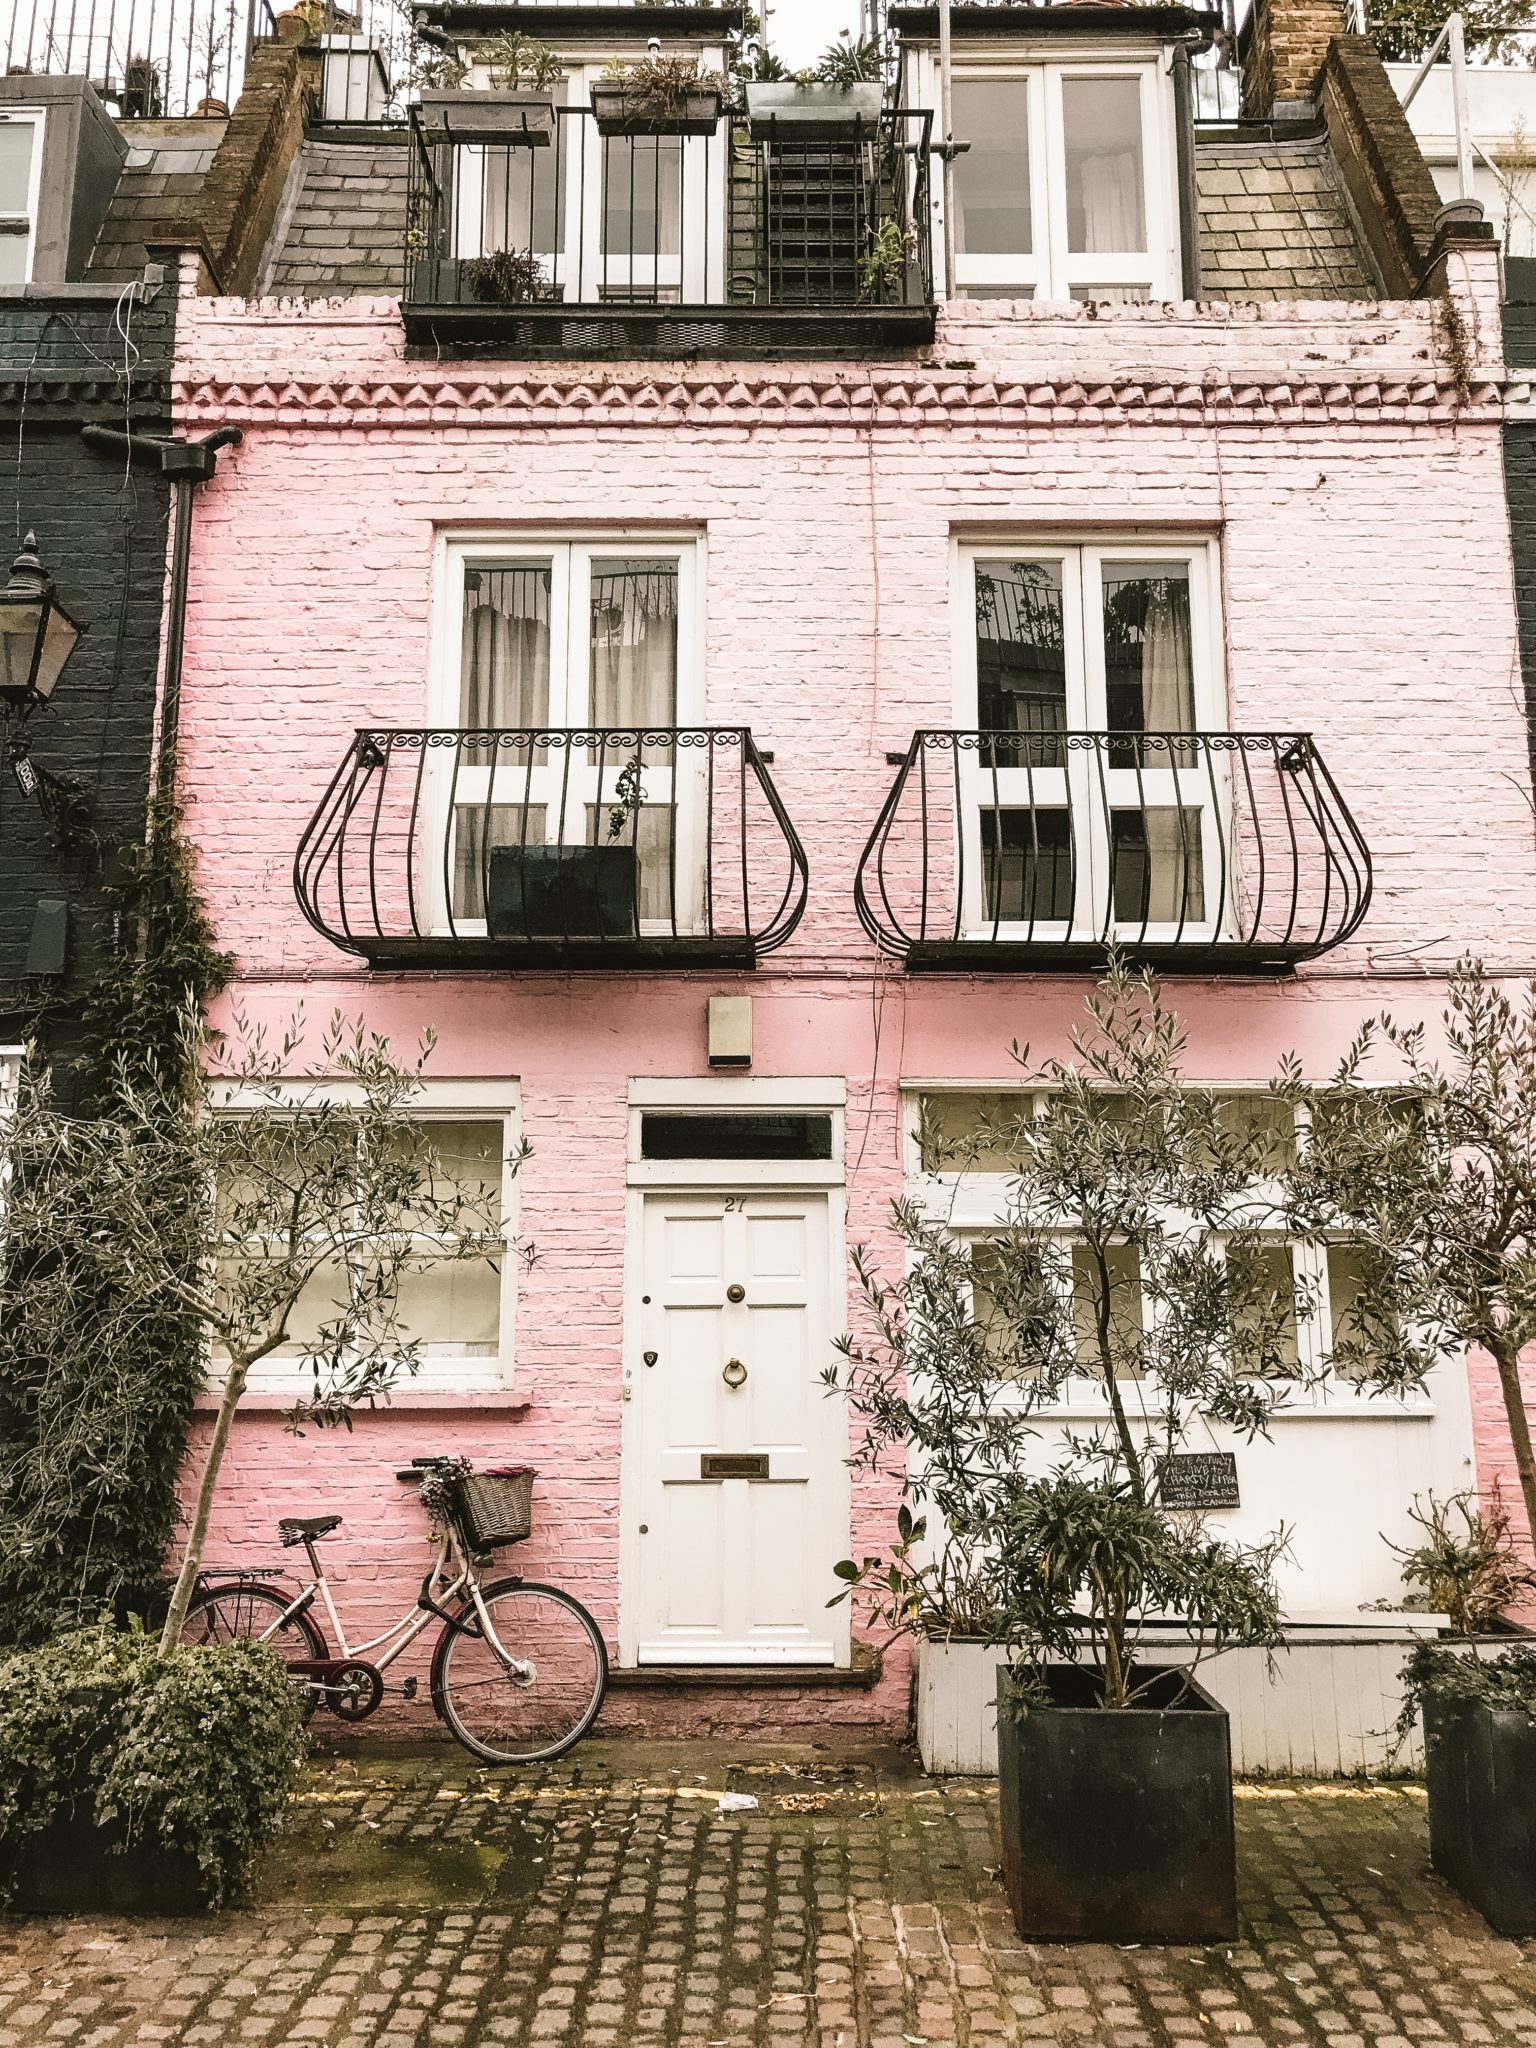 Exploring London's Neighbourhoods: Notting Hill